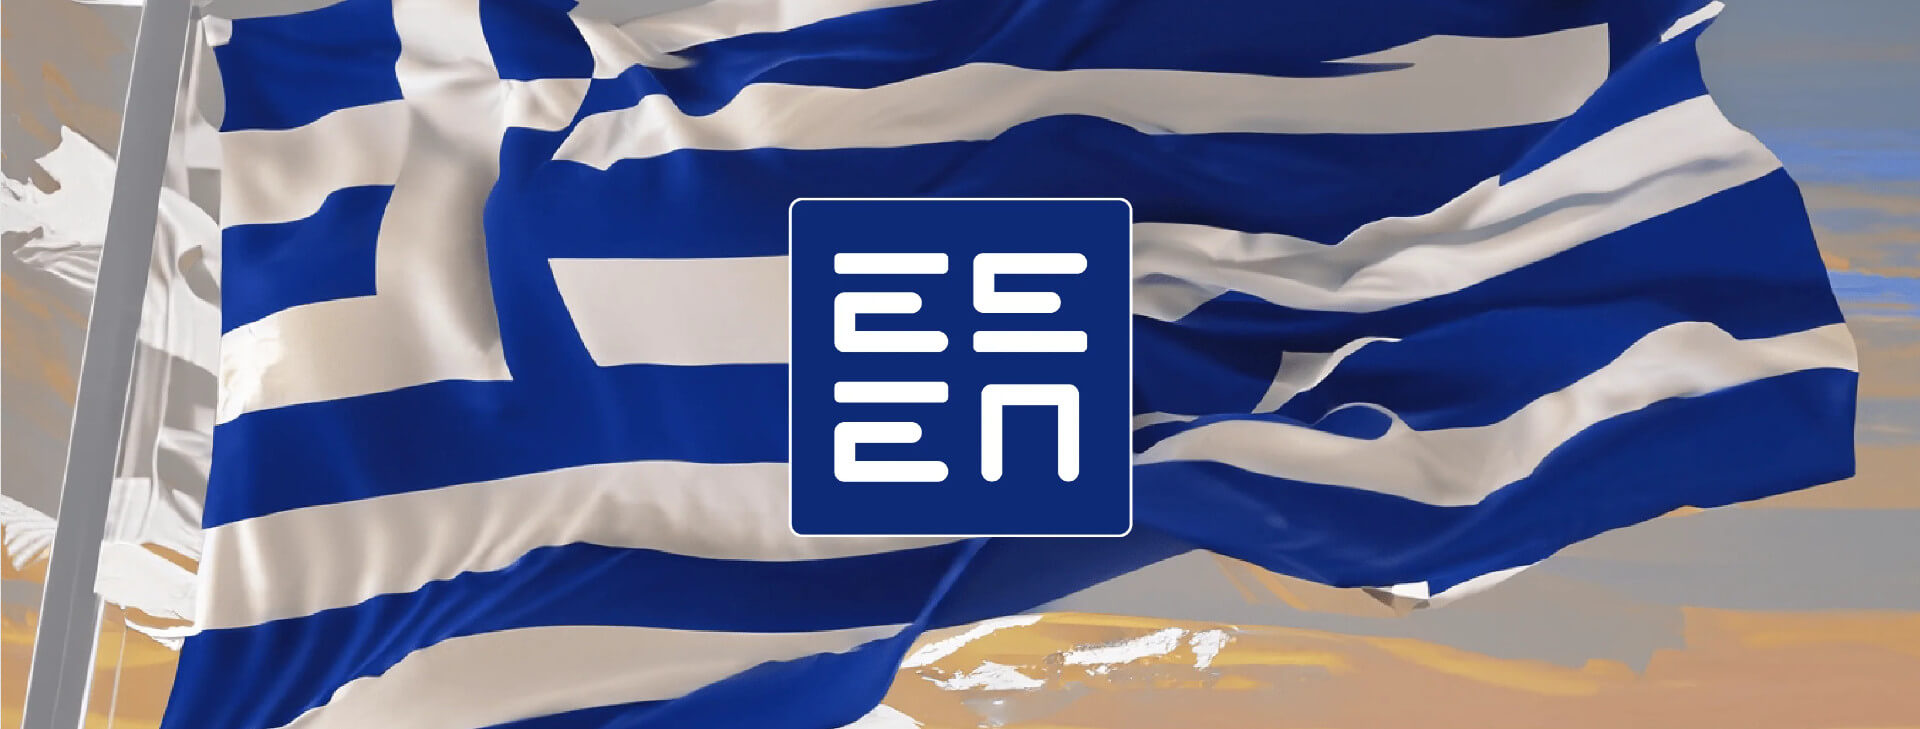 Πώς μπορούν να ελέγξουν οι παίκτες αν ένα καζίνο έχει άδεια λειτουργίας στην Ελλάδα